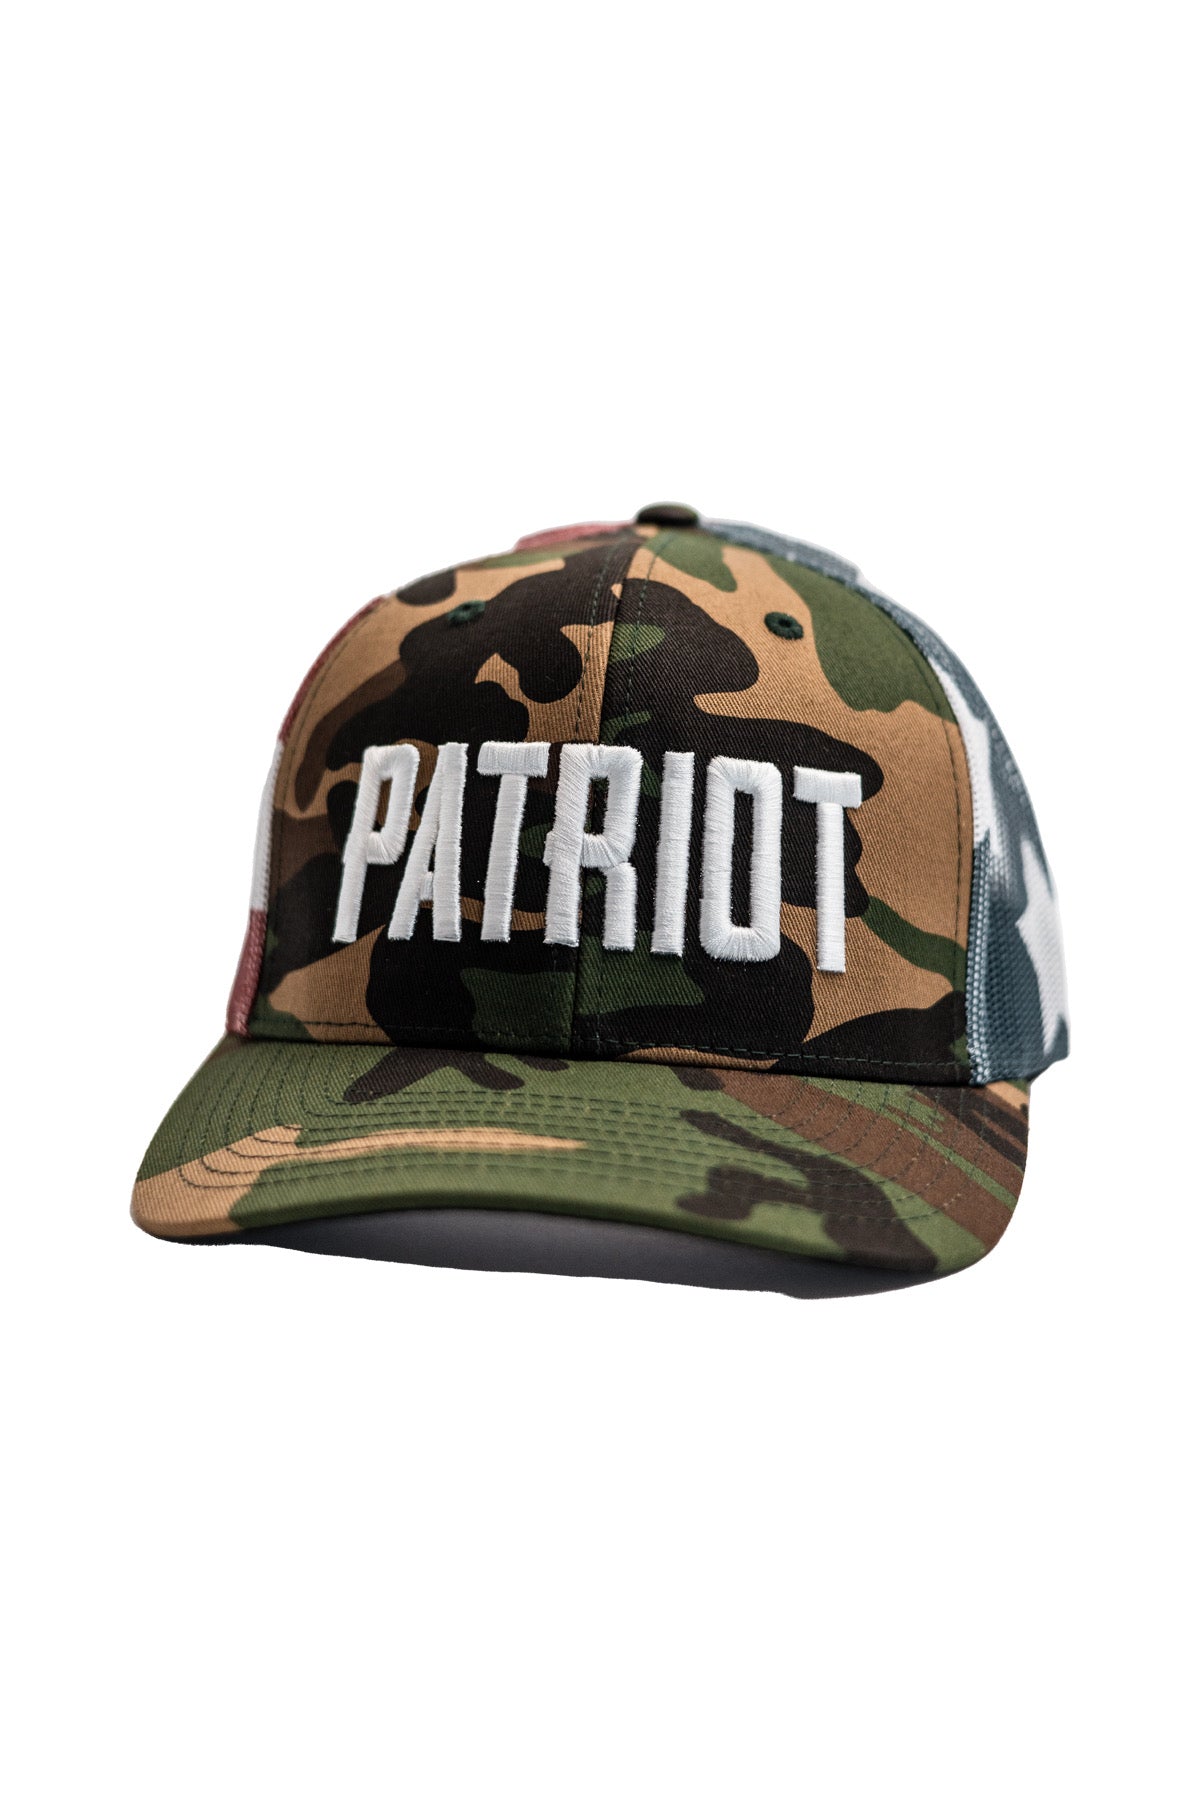 TMR Camo Flag Patriot Hat